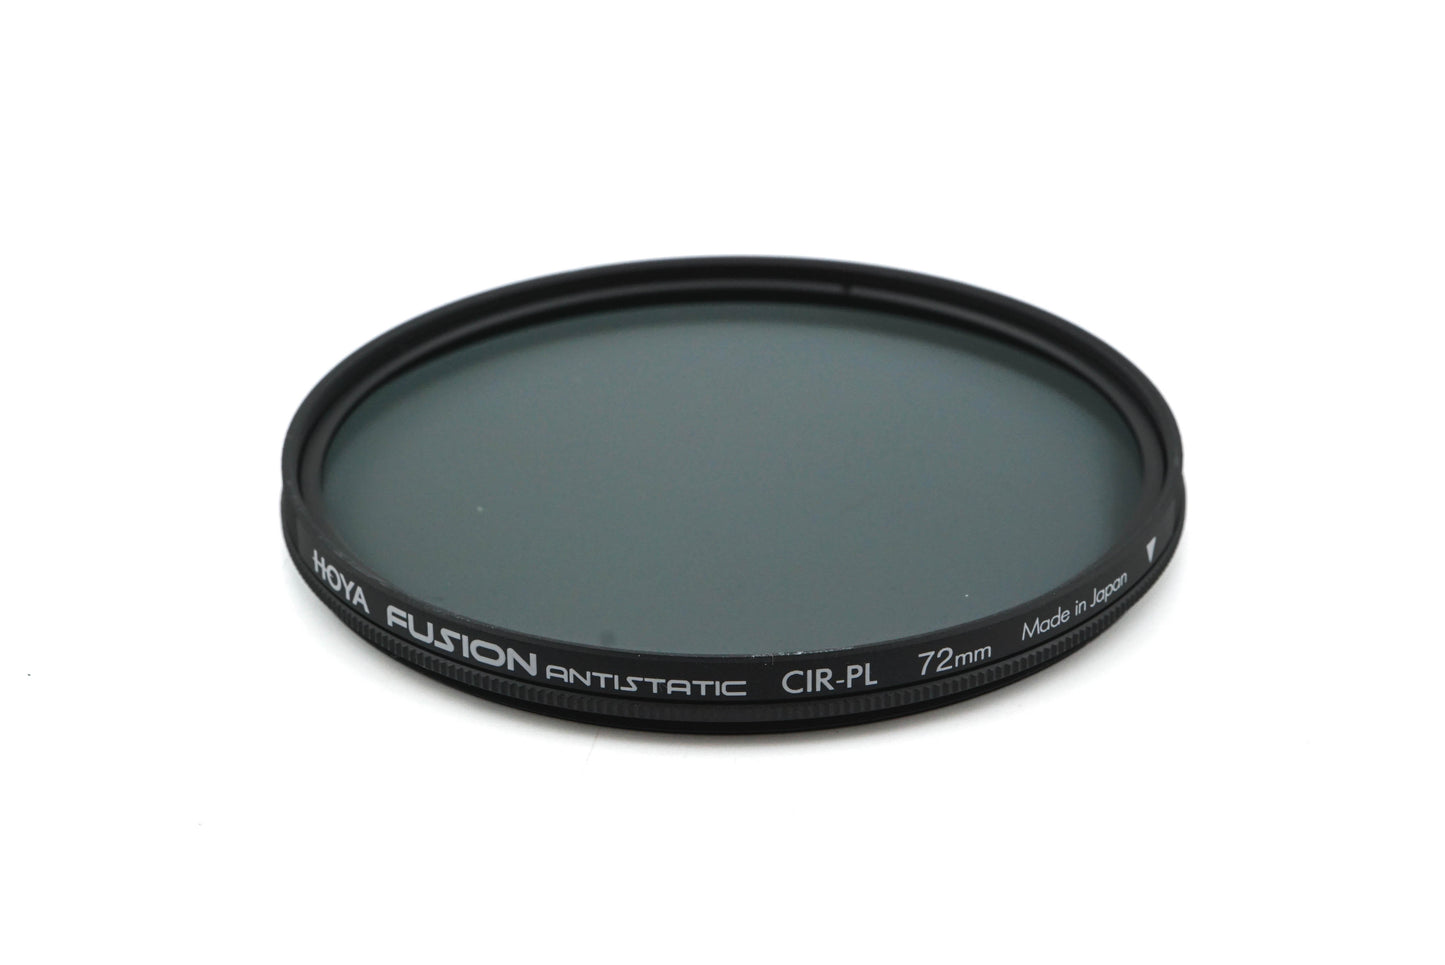 Hoya 72mm Circular Polarizing Filter Fusion Antistatic CIR-PL